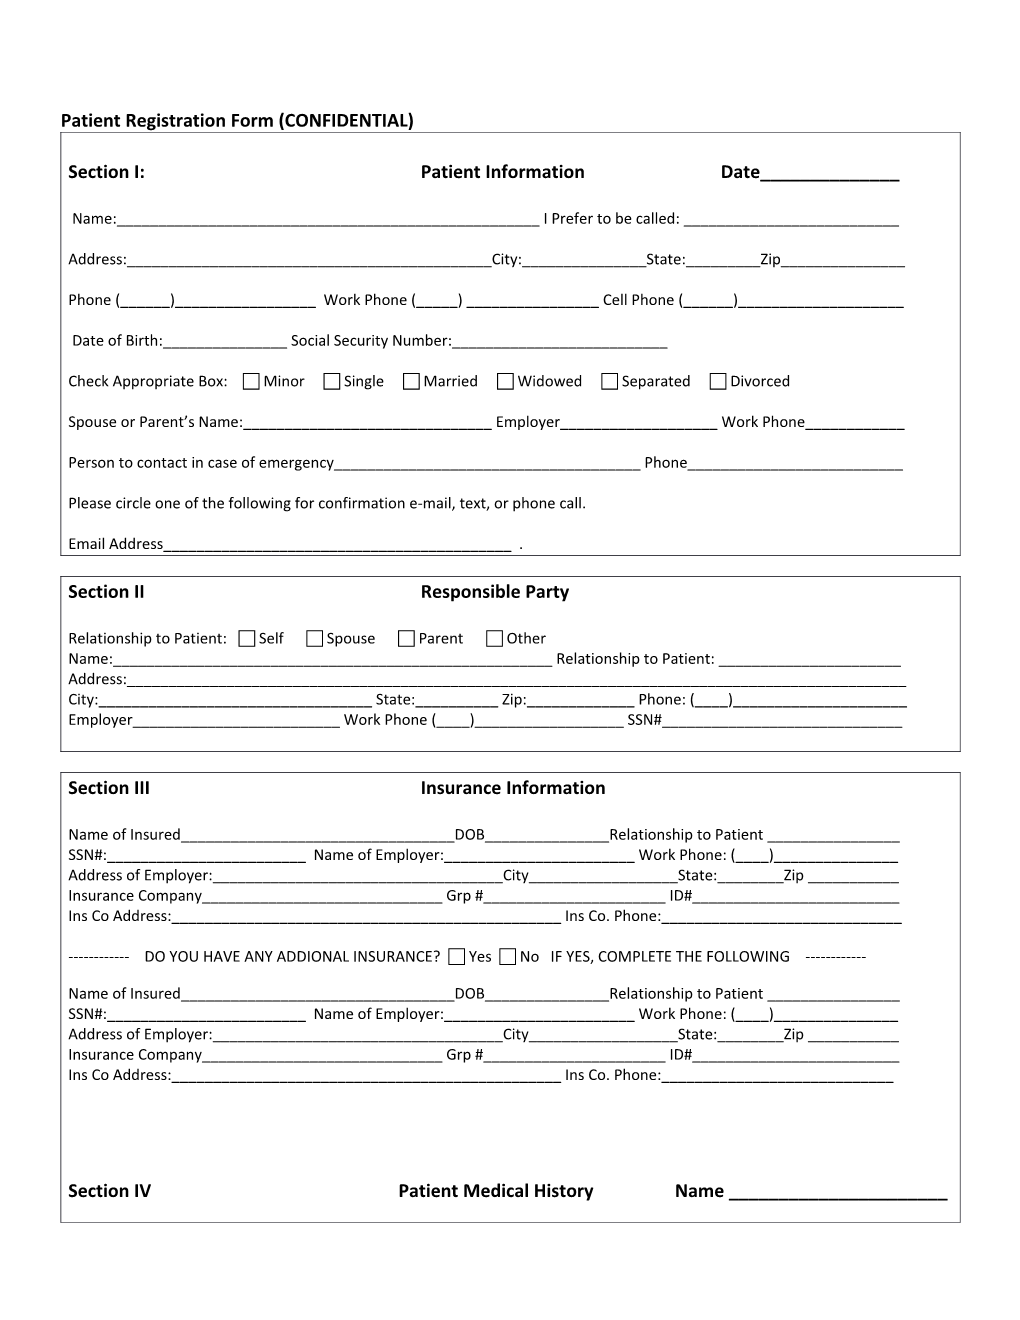 Patient Registration Form (CONFIDENTIAL)